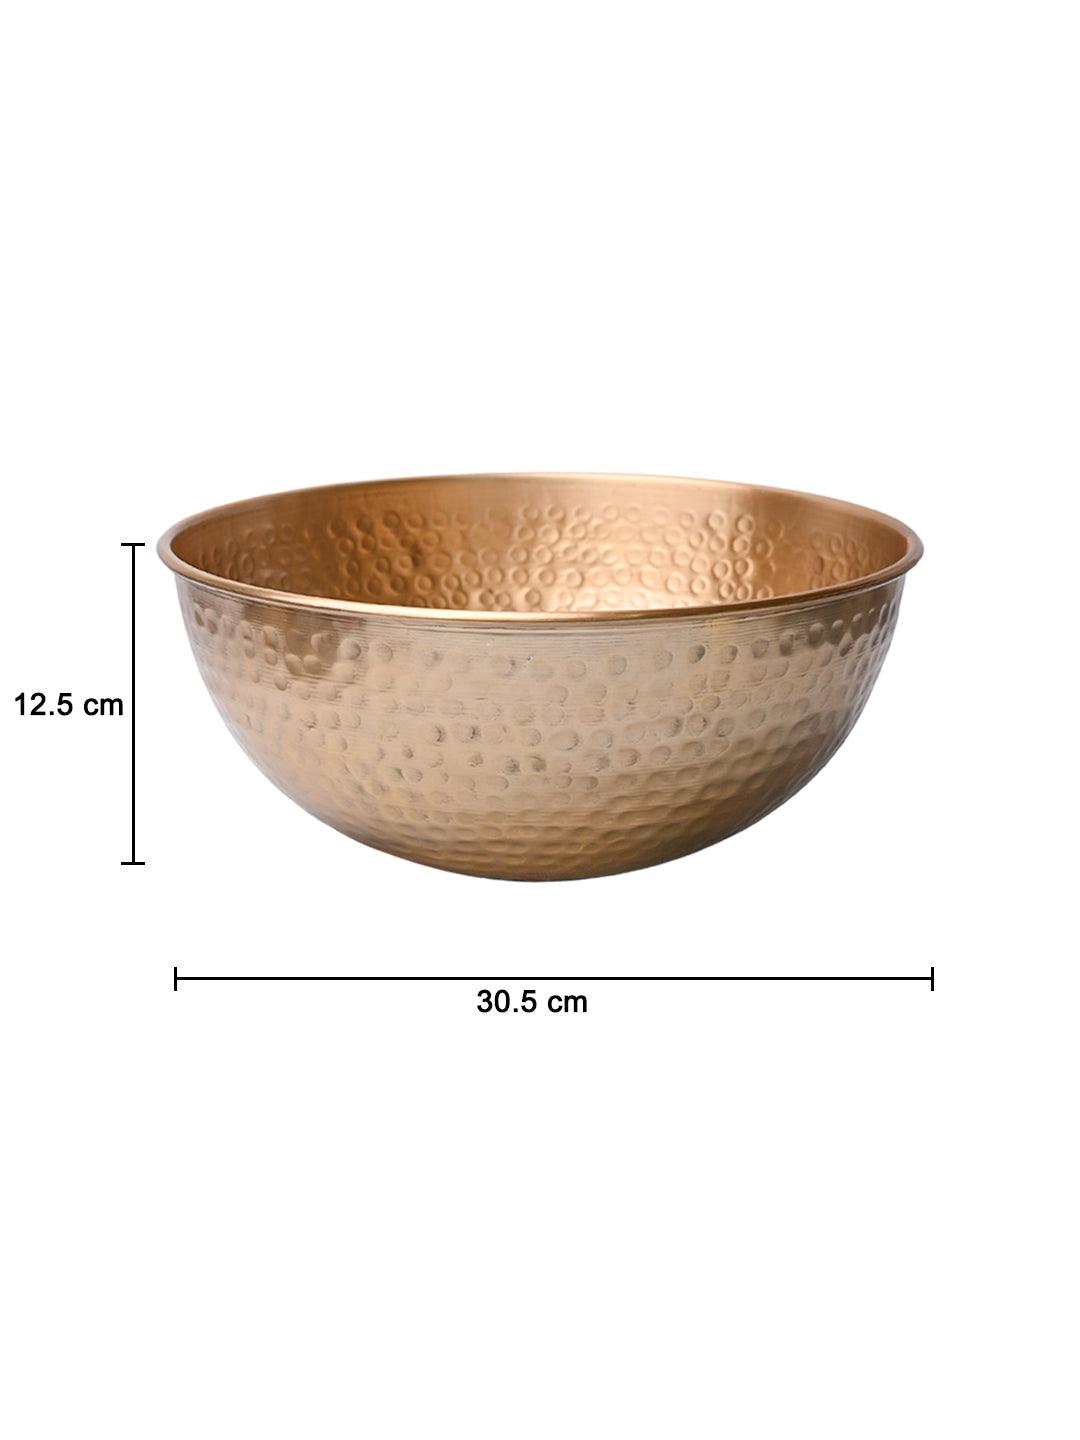 VON CASA Decorative Bowl - MARKET99